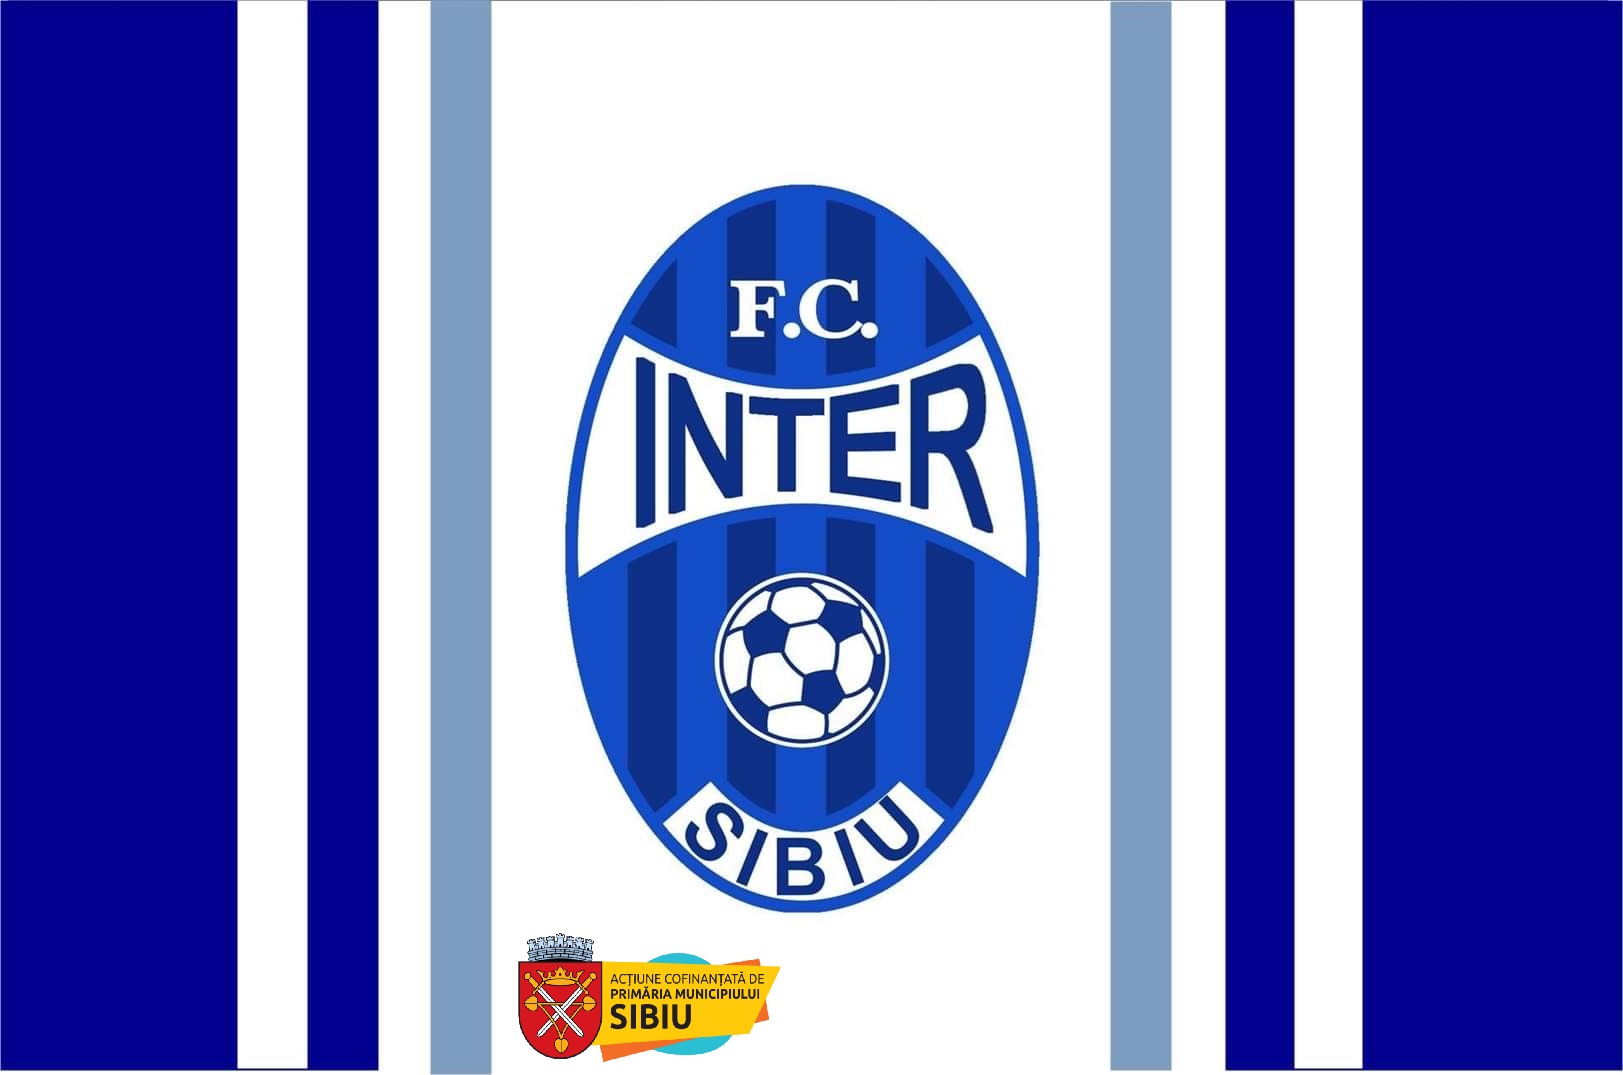 AFC Inter Stars 2020 Sibiu vs CSS Șoimii Sibiu U13